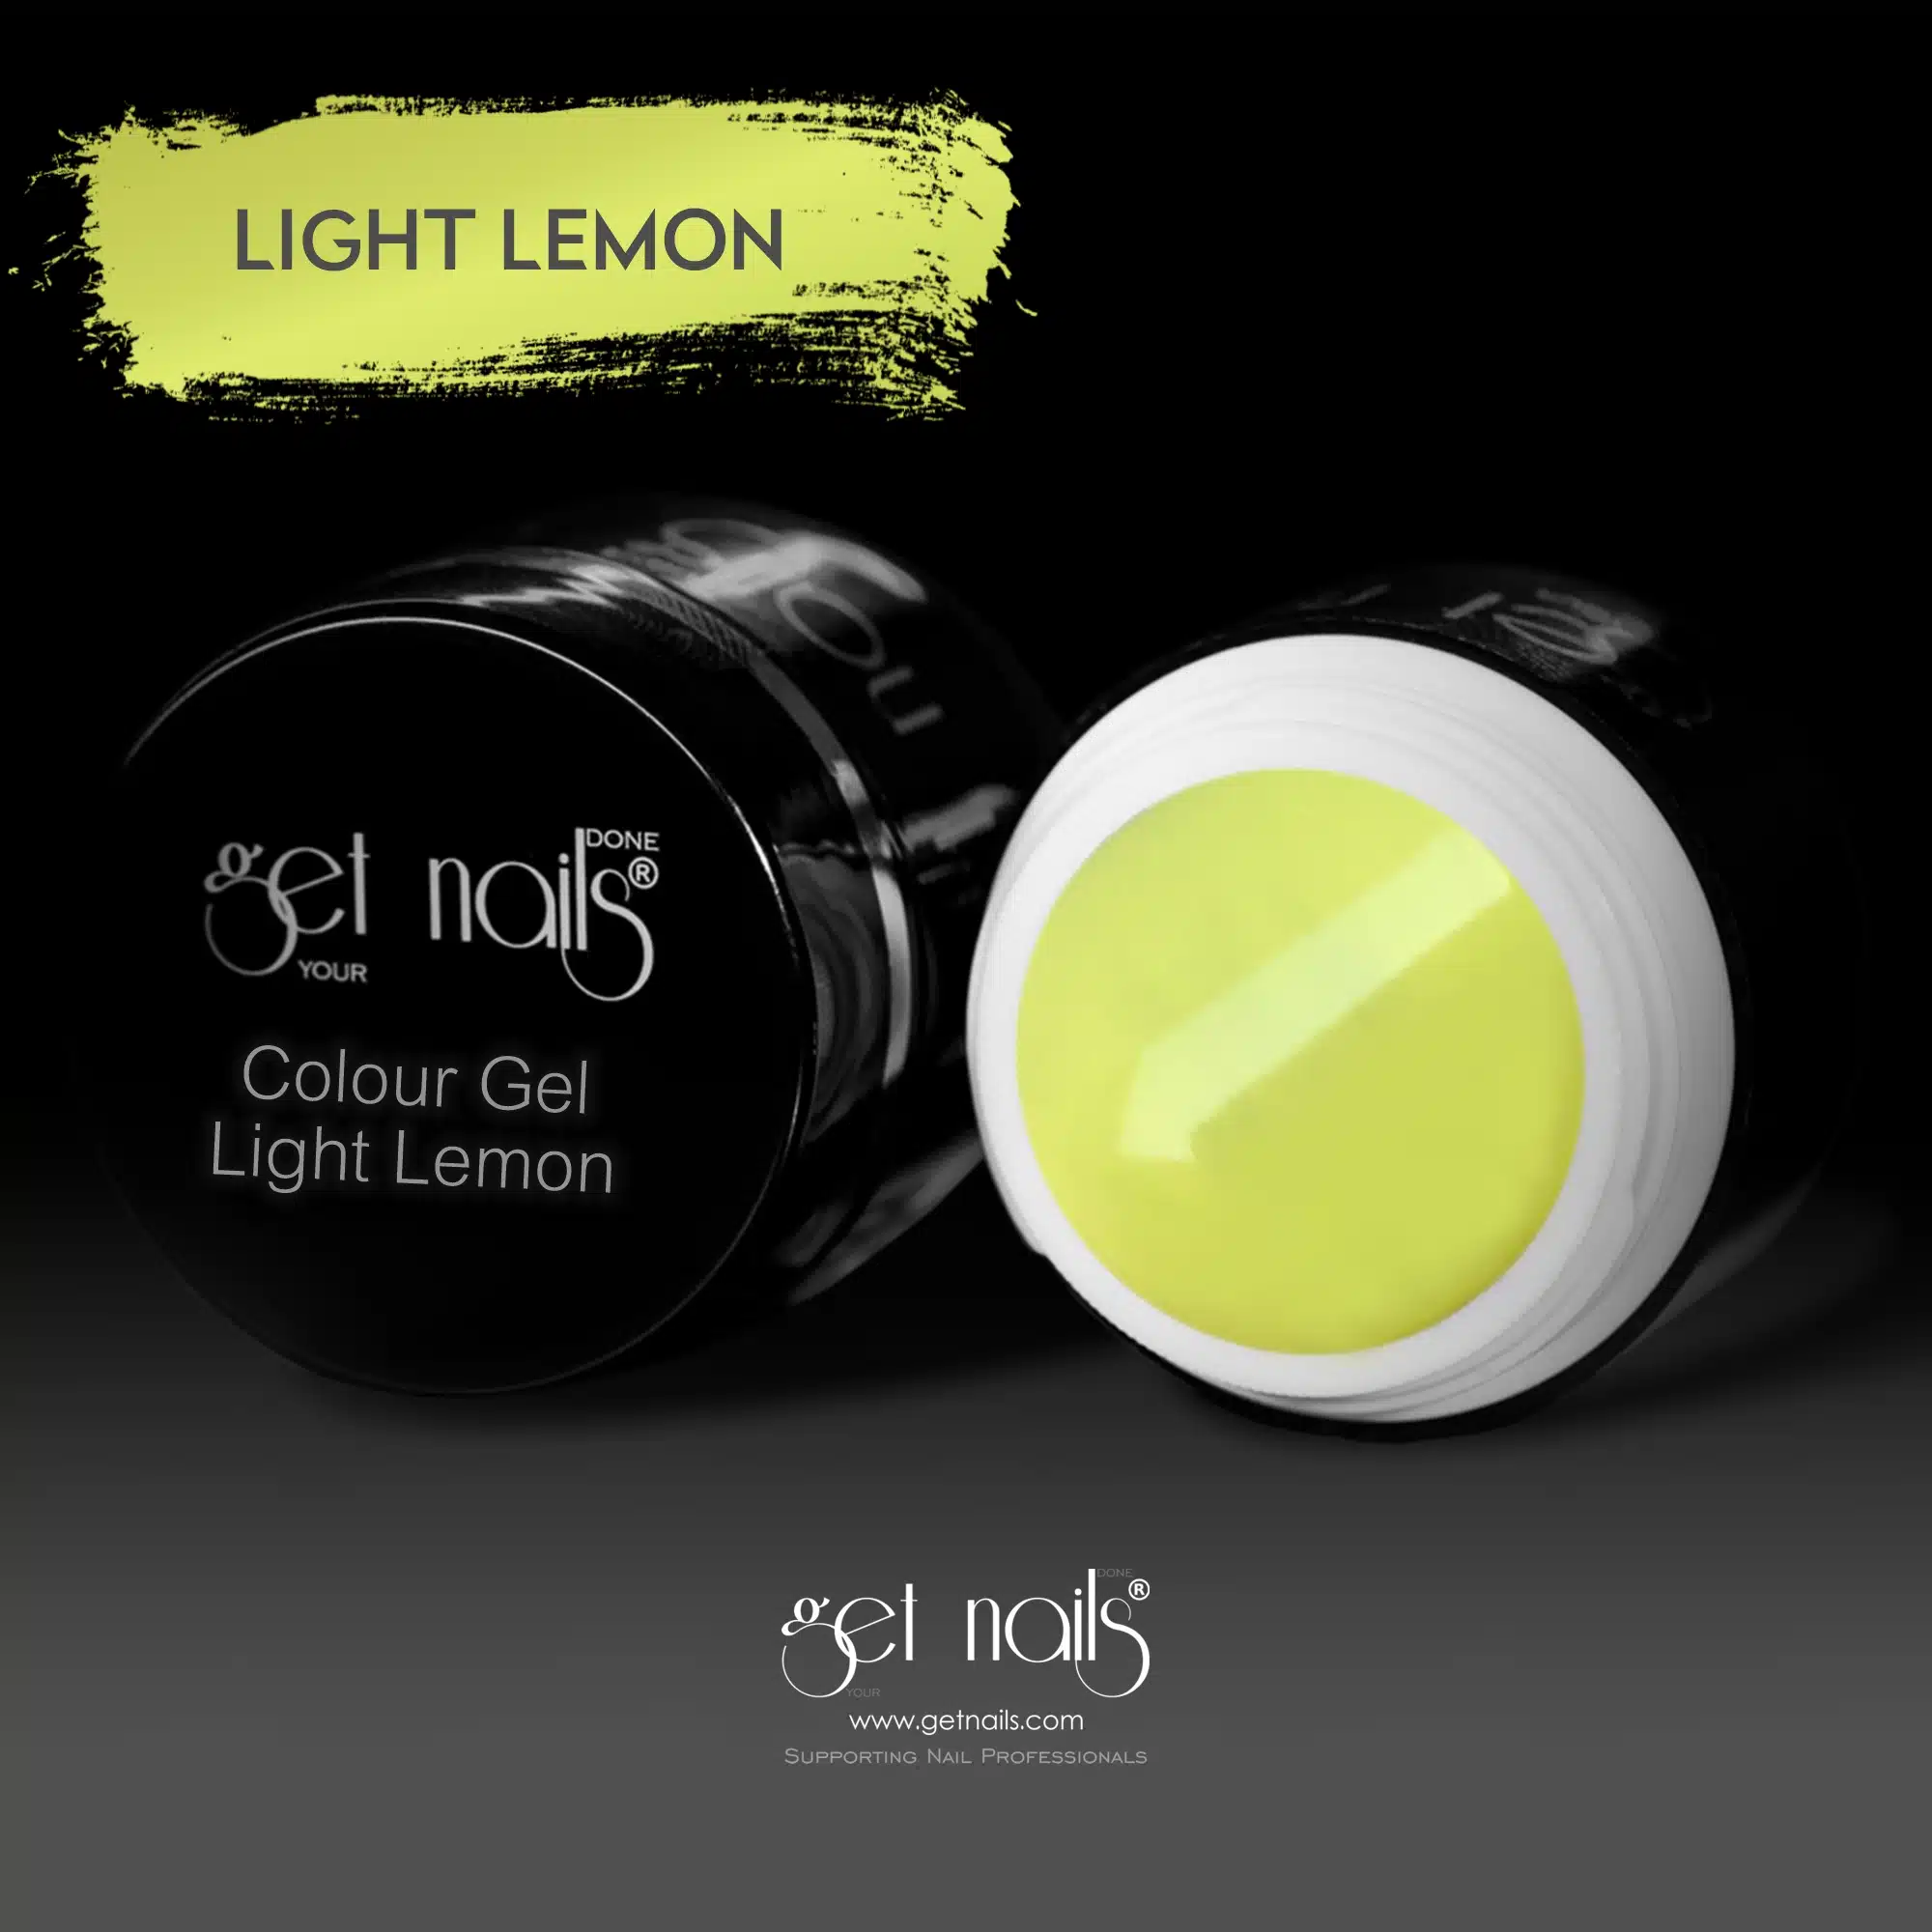 Get Nails Austria - Colour Gel Light Lemon 5g